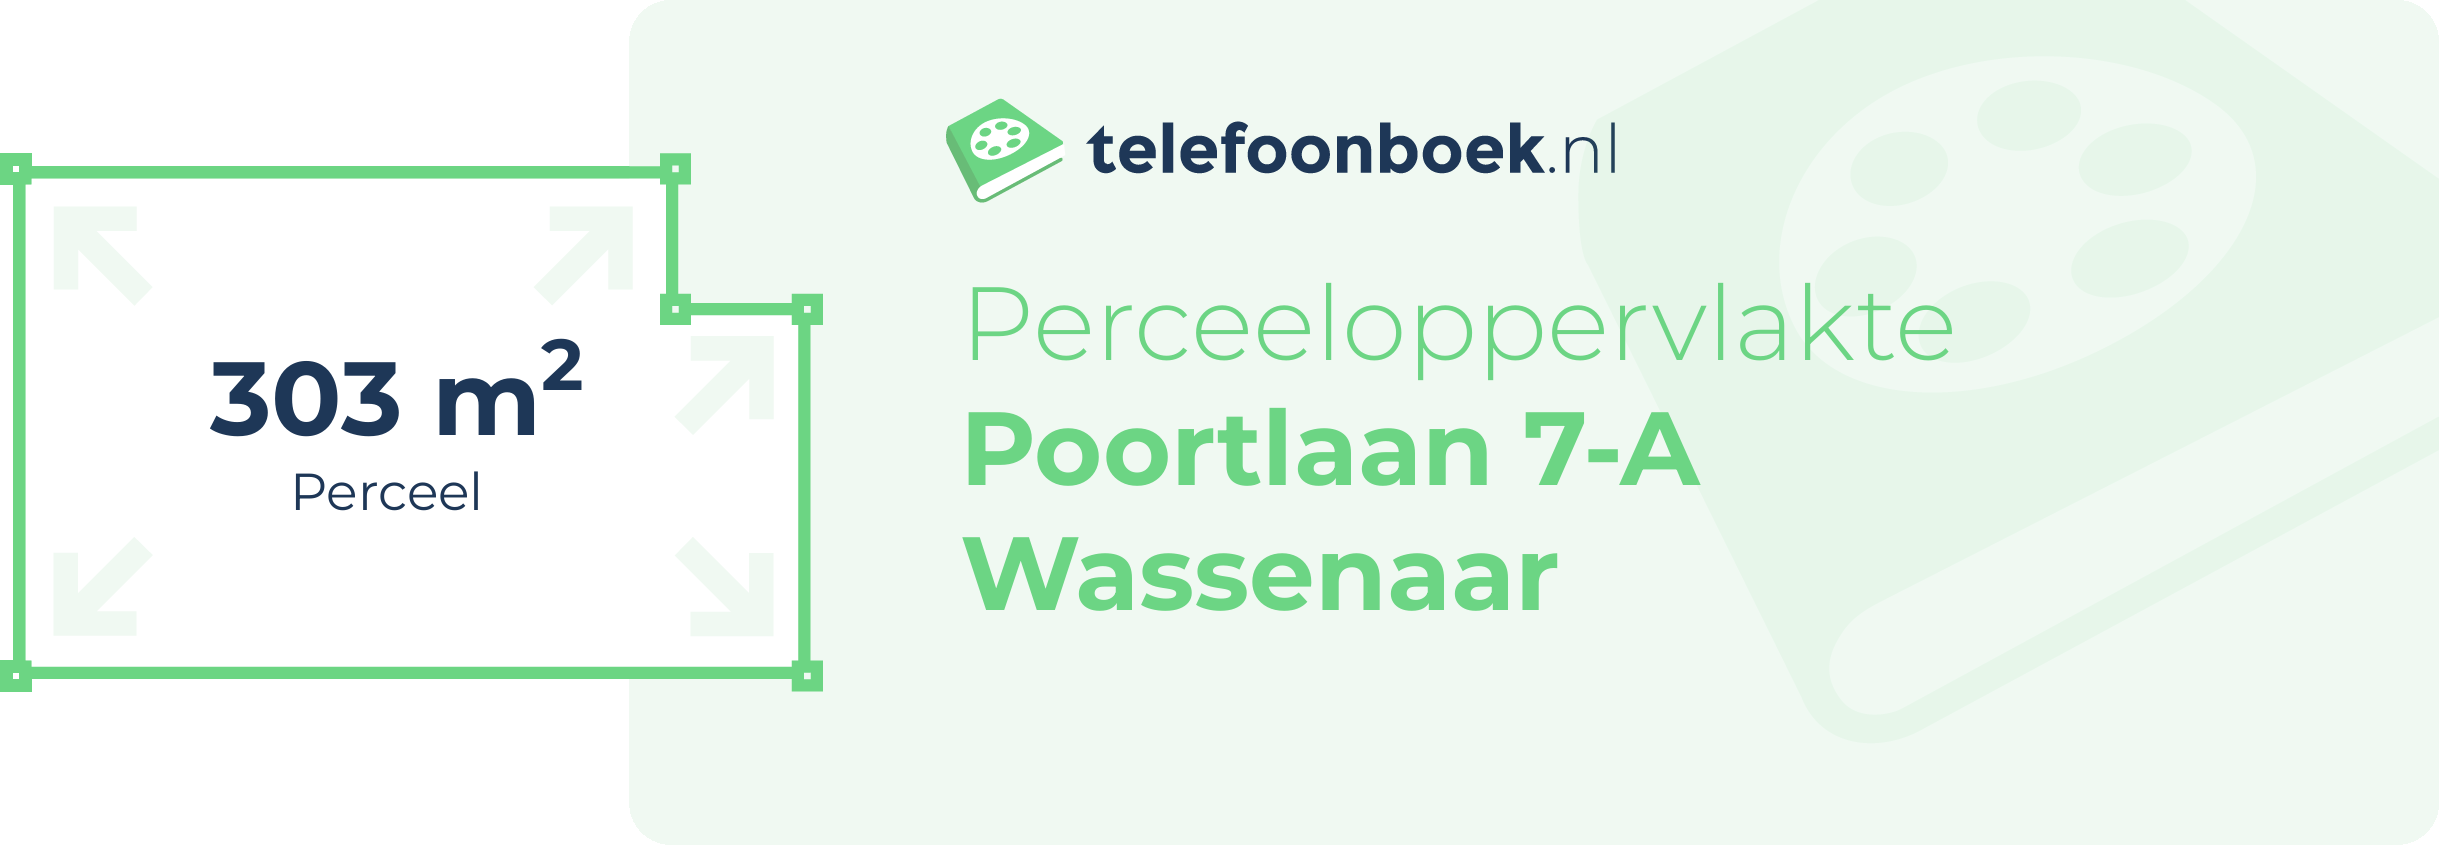 Perceeloppervlakte Poortlaan 7-A Wassenaar